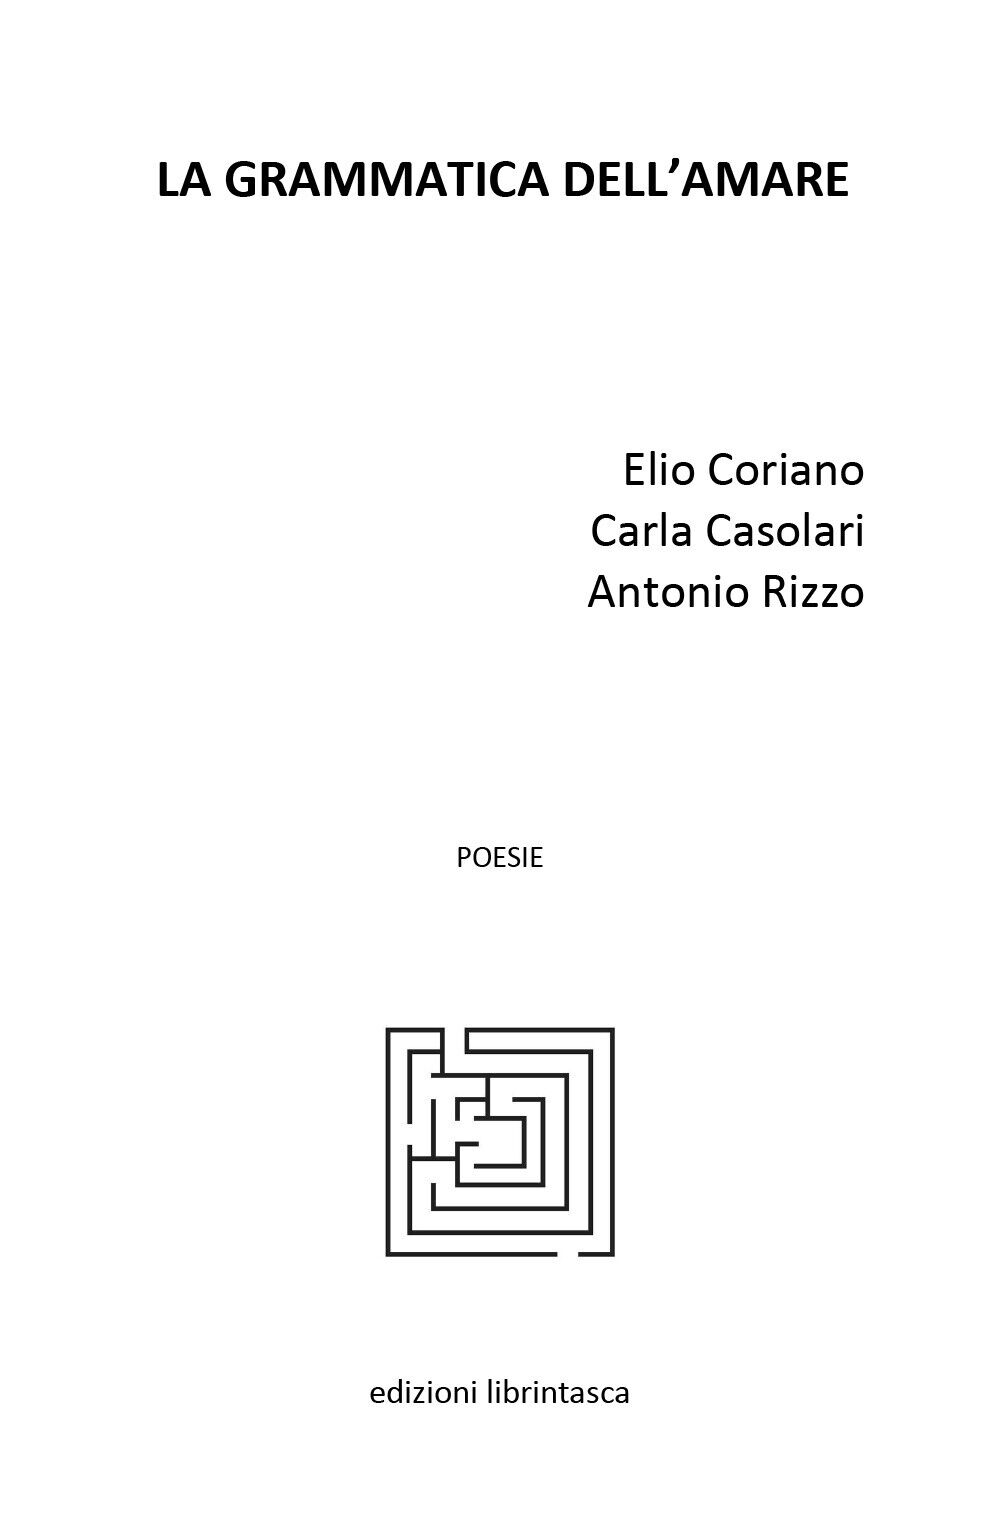 La grammatica delL'amare di Elio Coriano, Carla Casolari, Antonio Rizzo,  2020, 